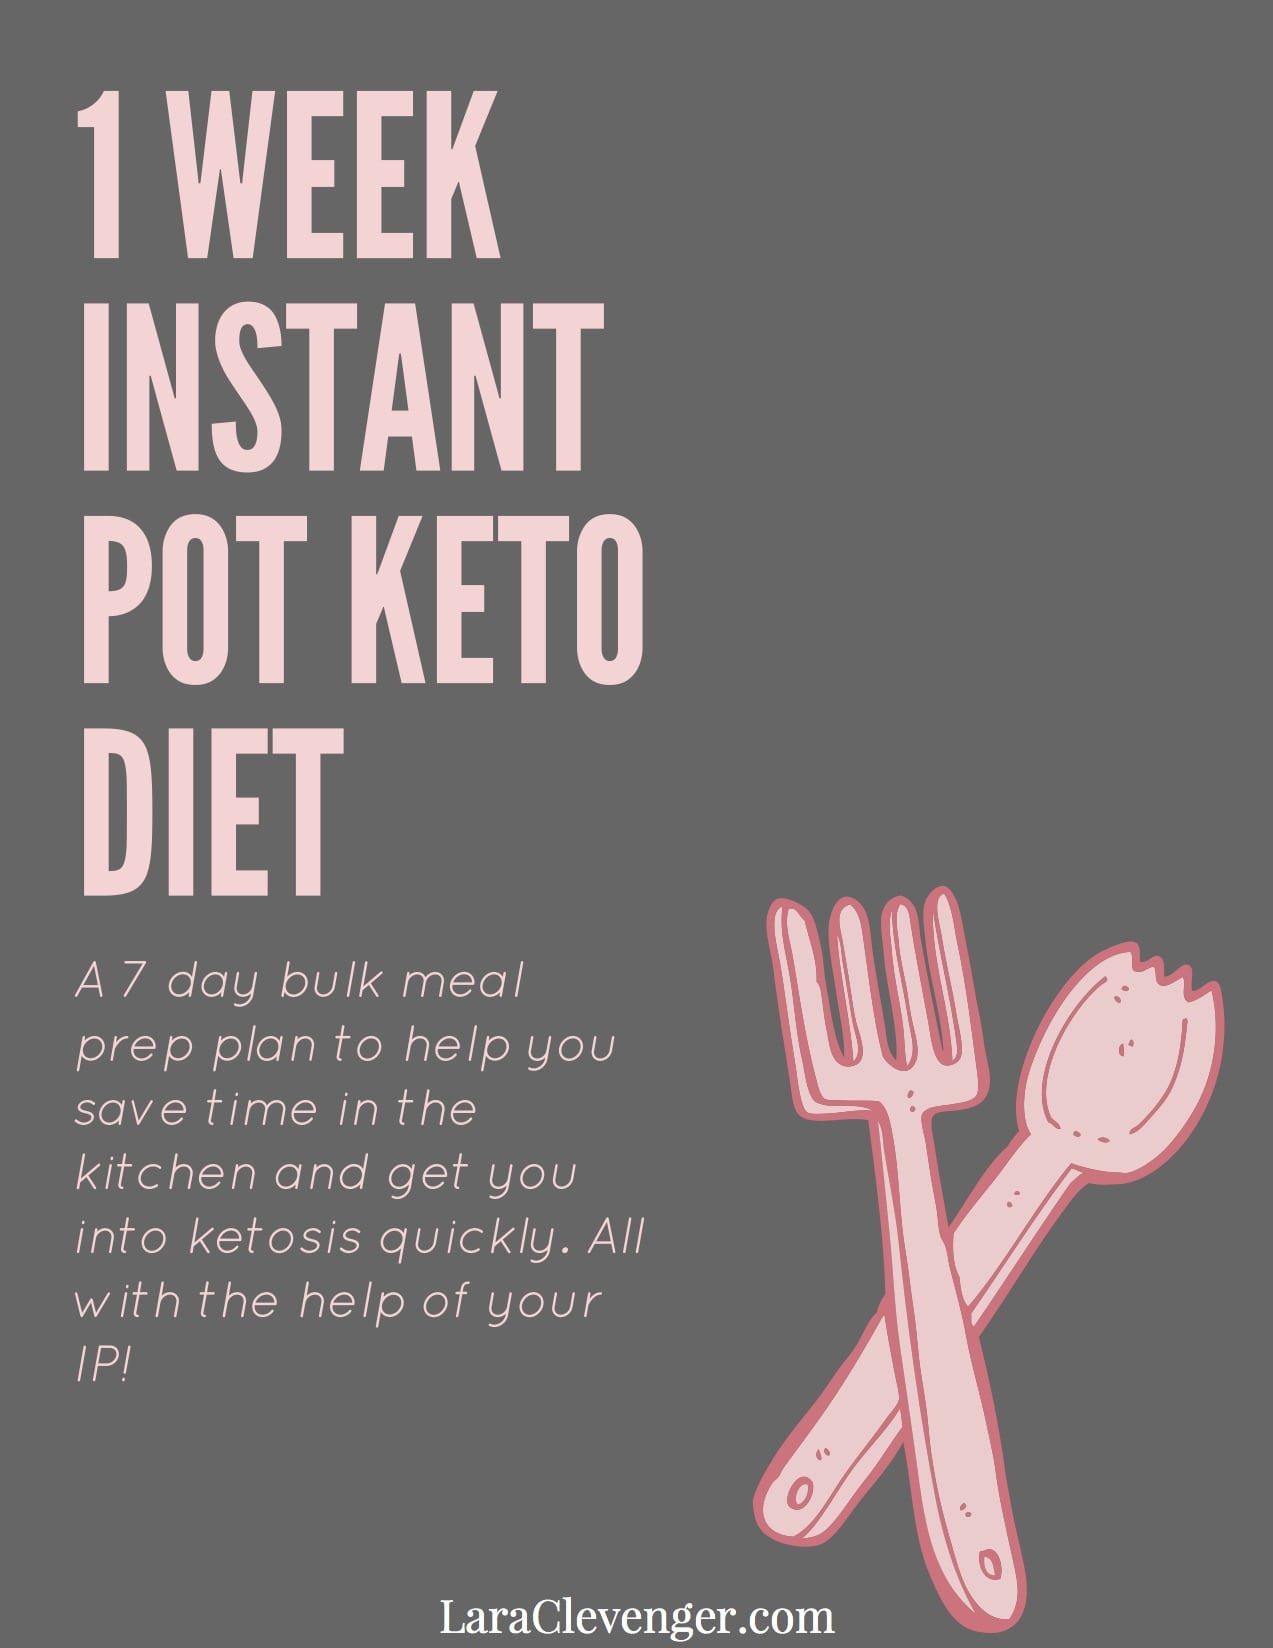 Ketosis Diet Week 1
 Free 1 Week Instant Pot Keto Diet Meal Plan